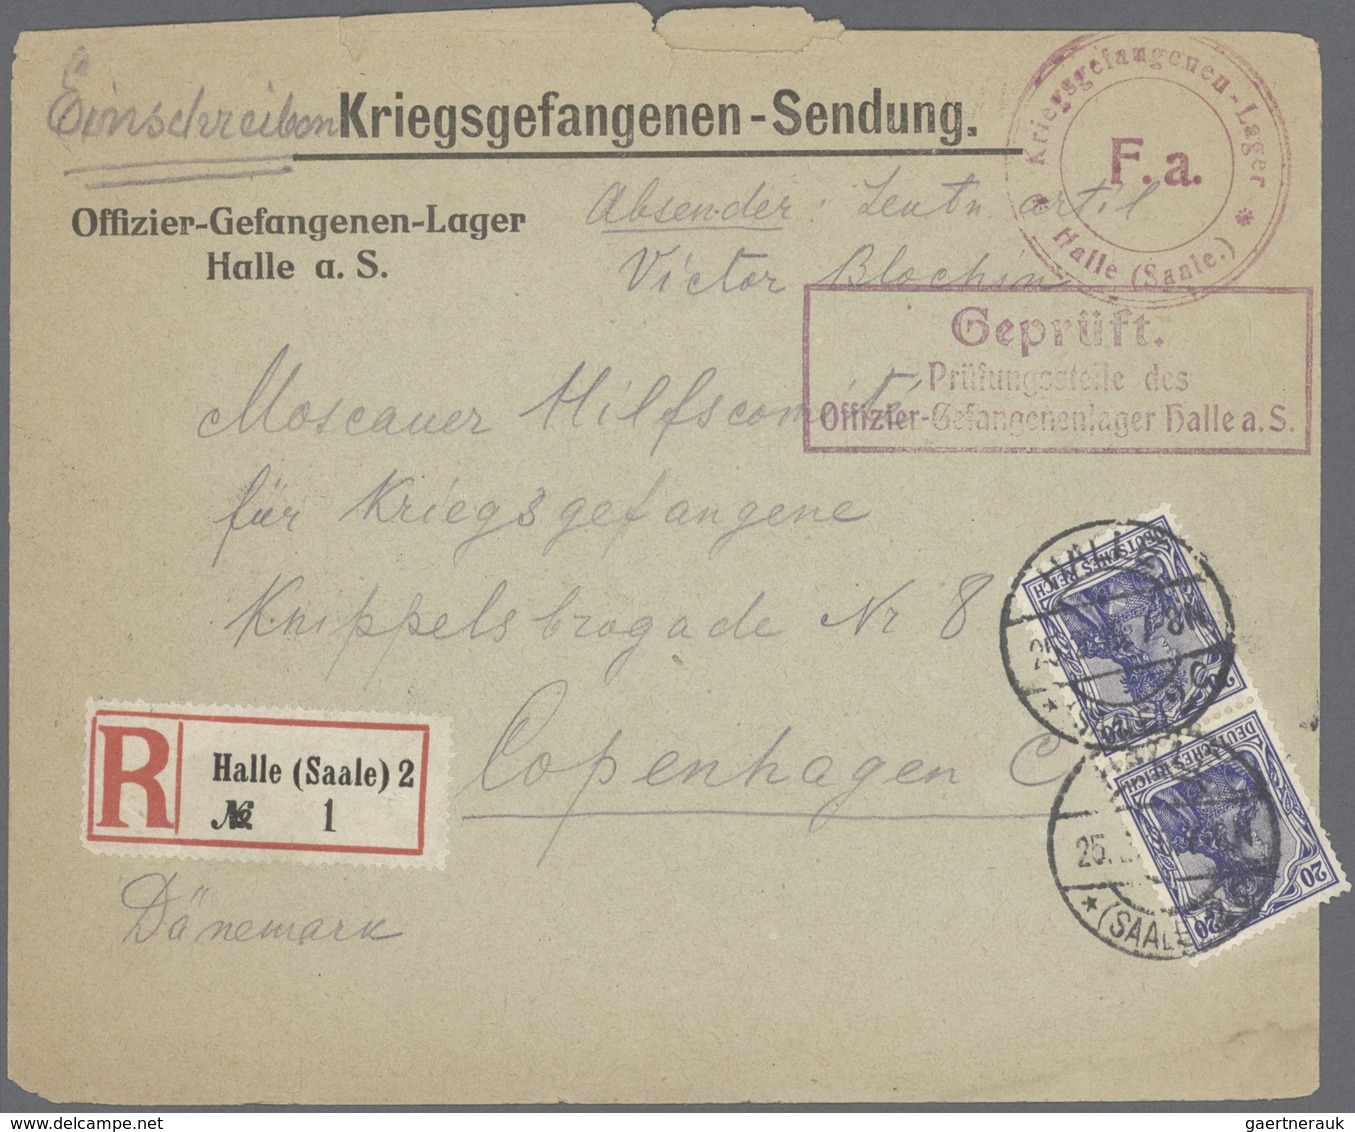 Kriegsgefangenen-Lagerpost: 1914/1918, einige hundert Briefe und Karten im alten, selbstgefertigtem